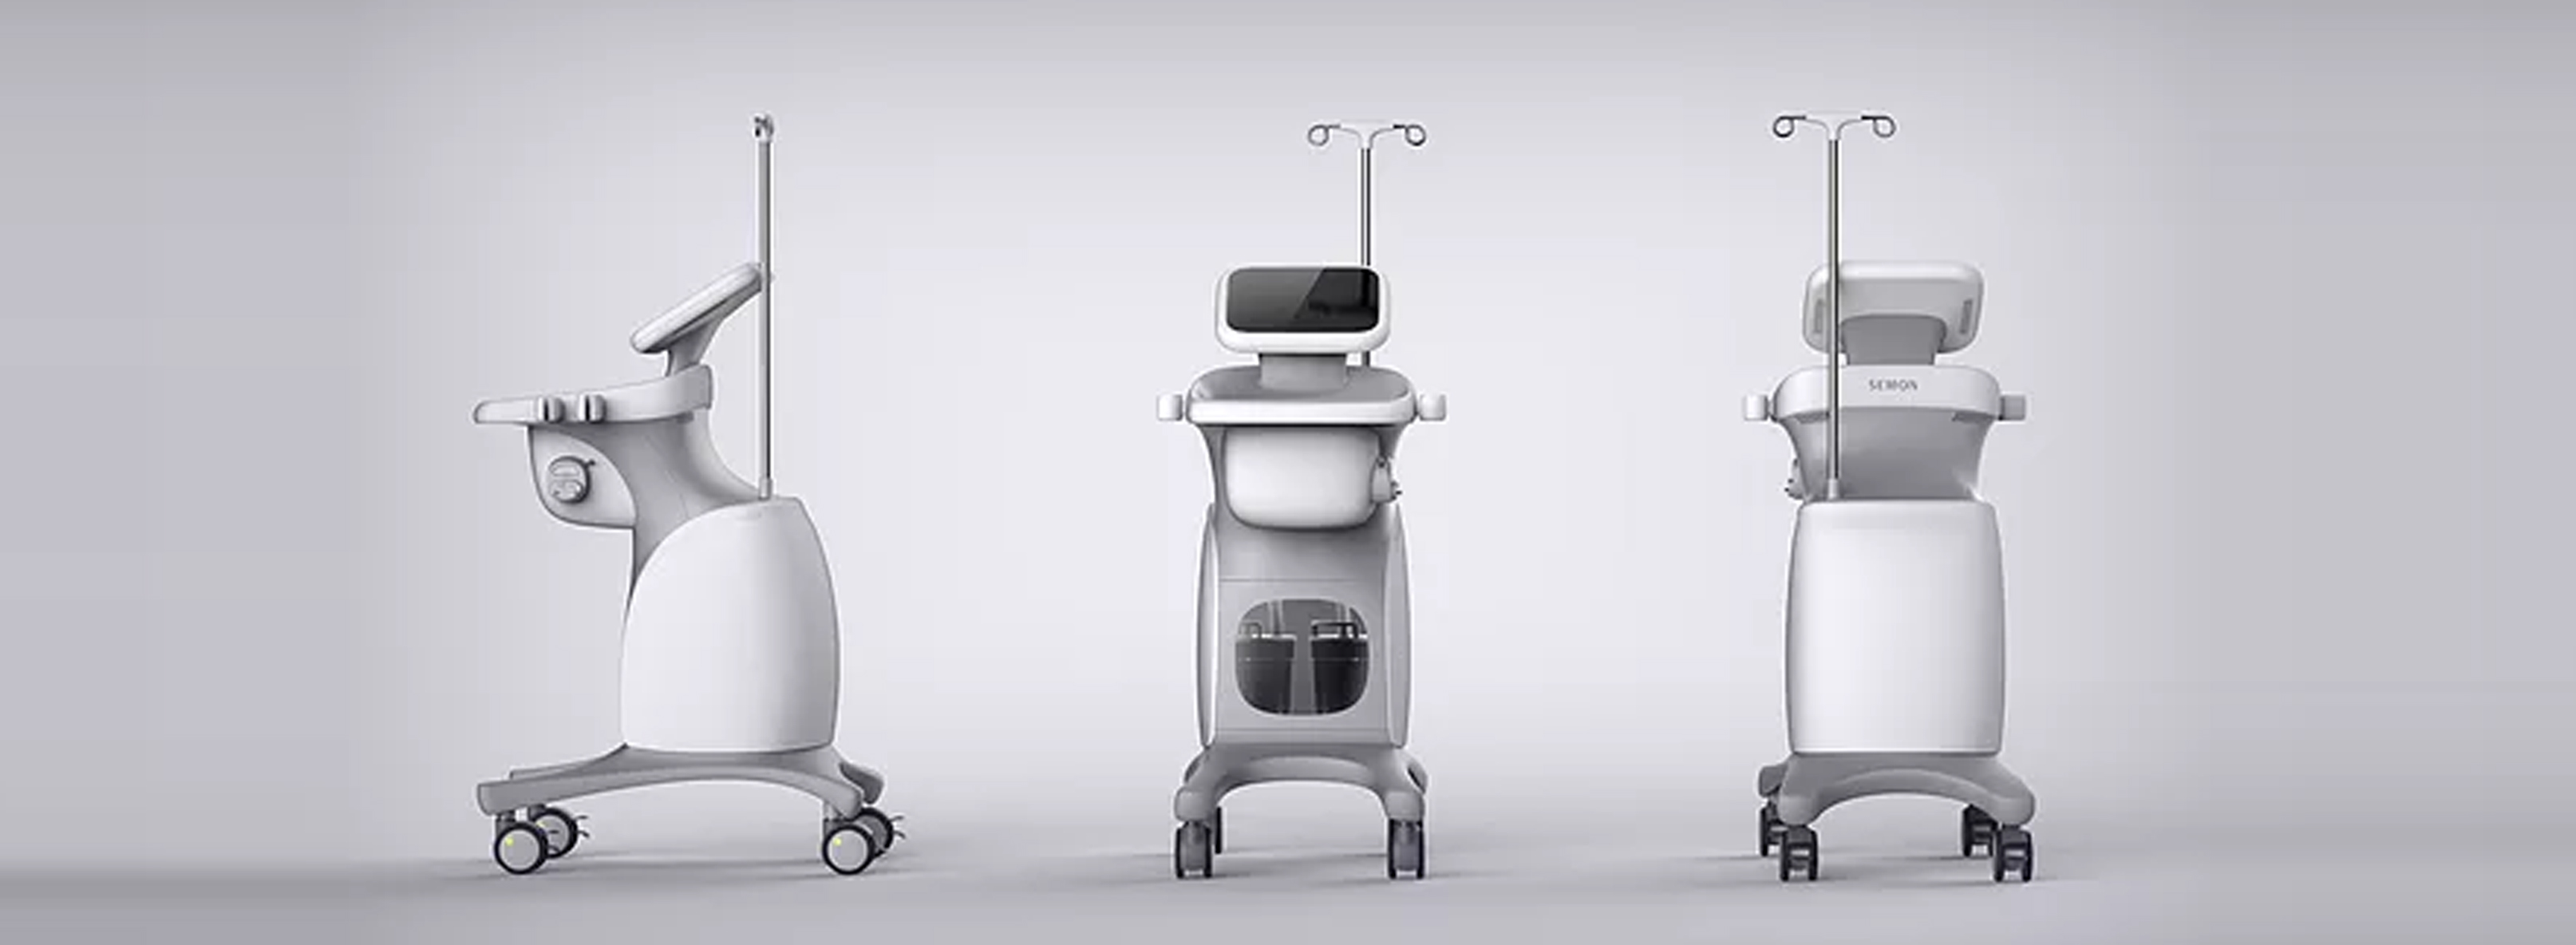 医疗器械工业设计的未来发展